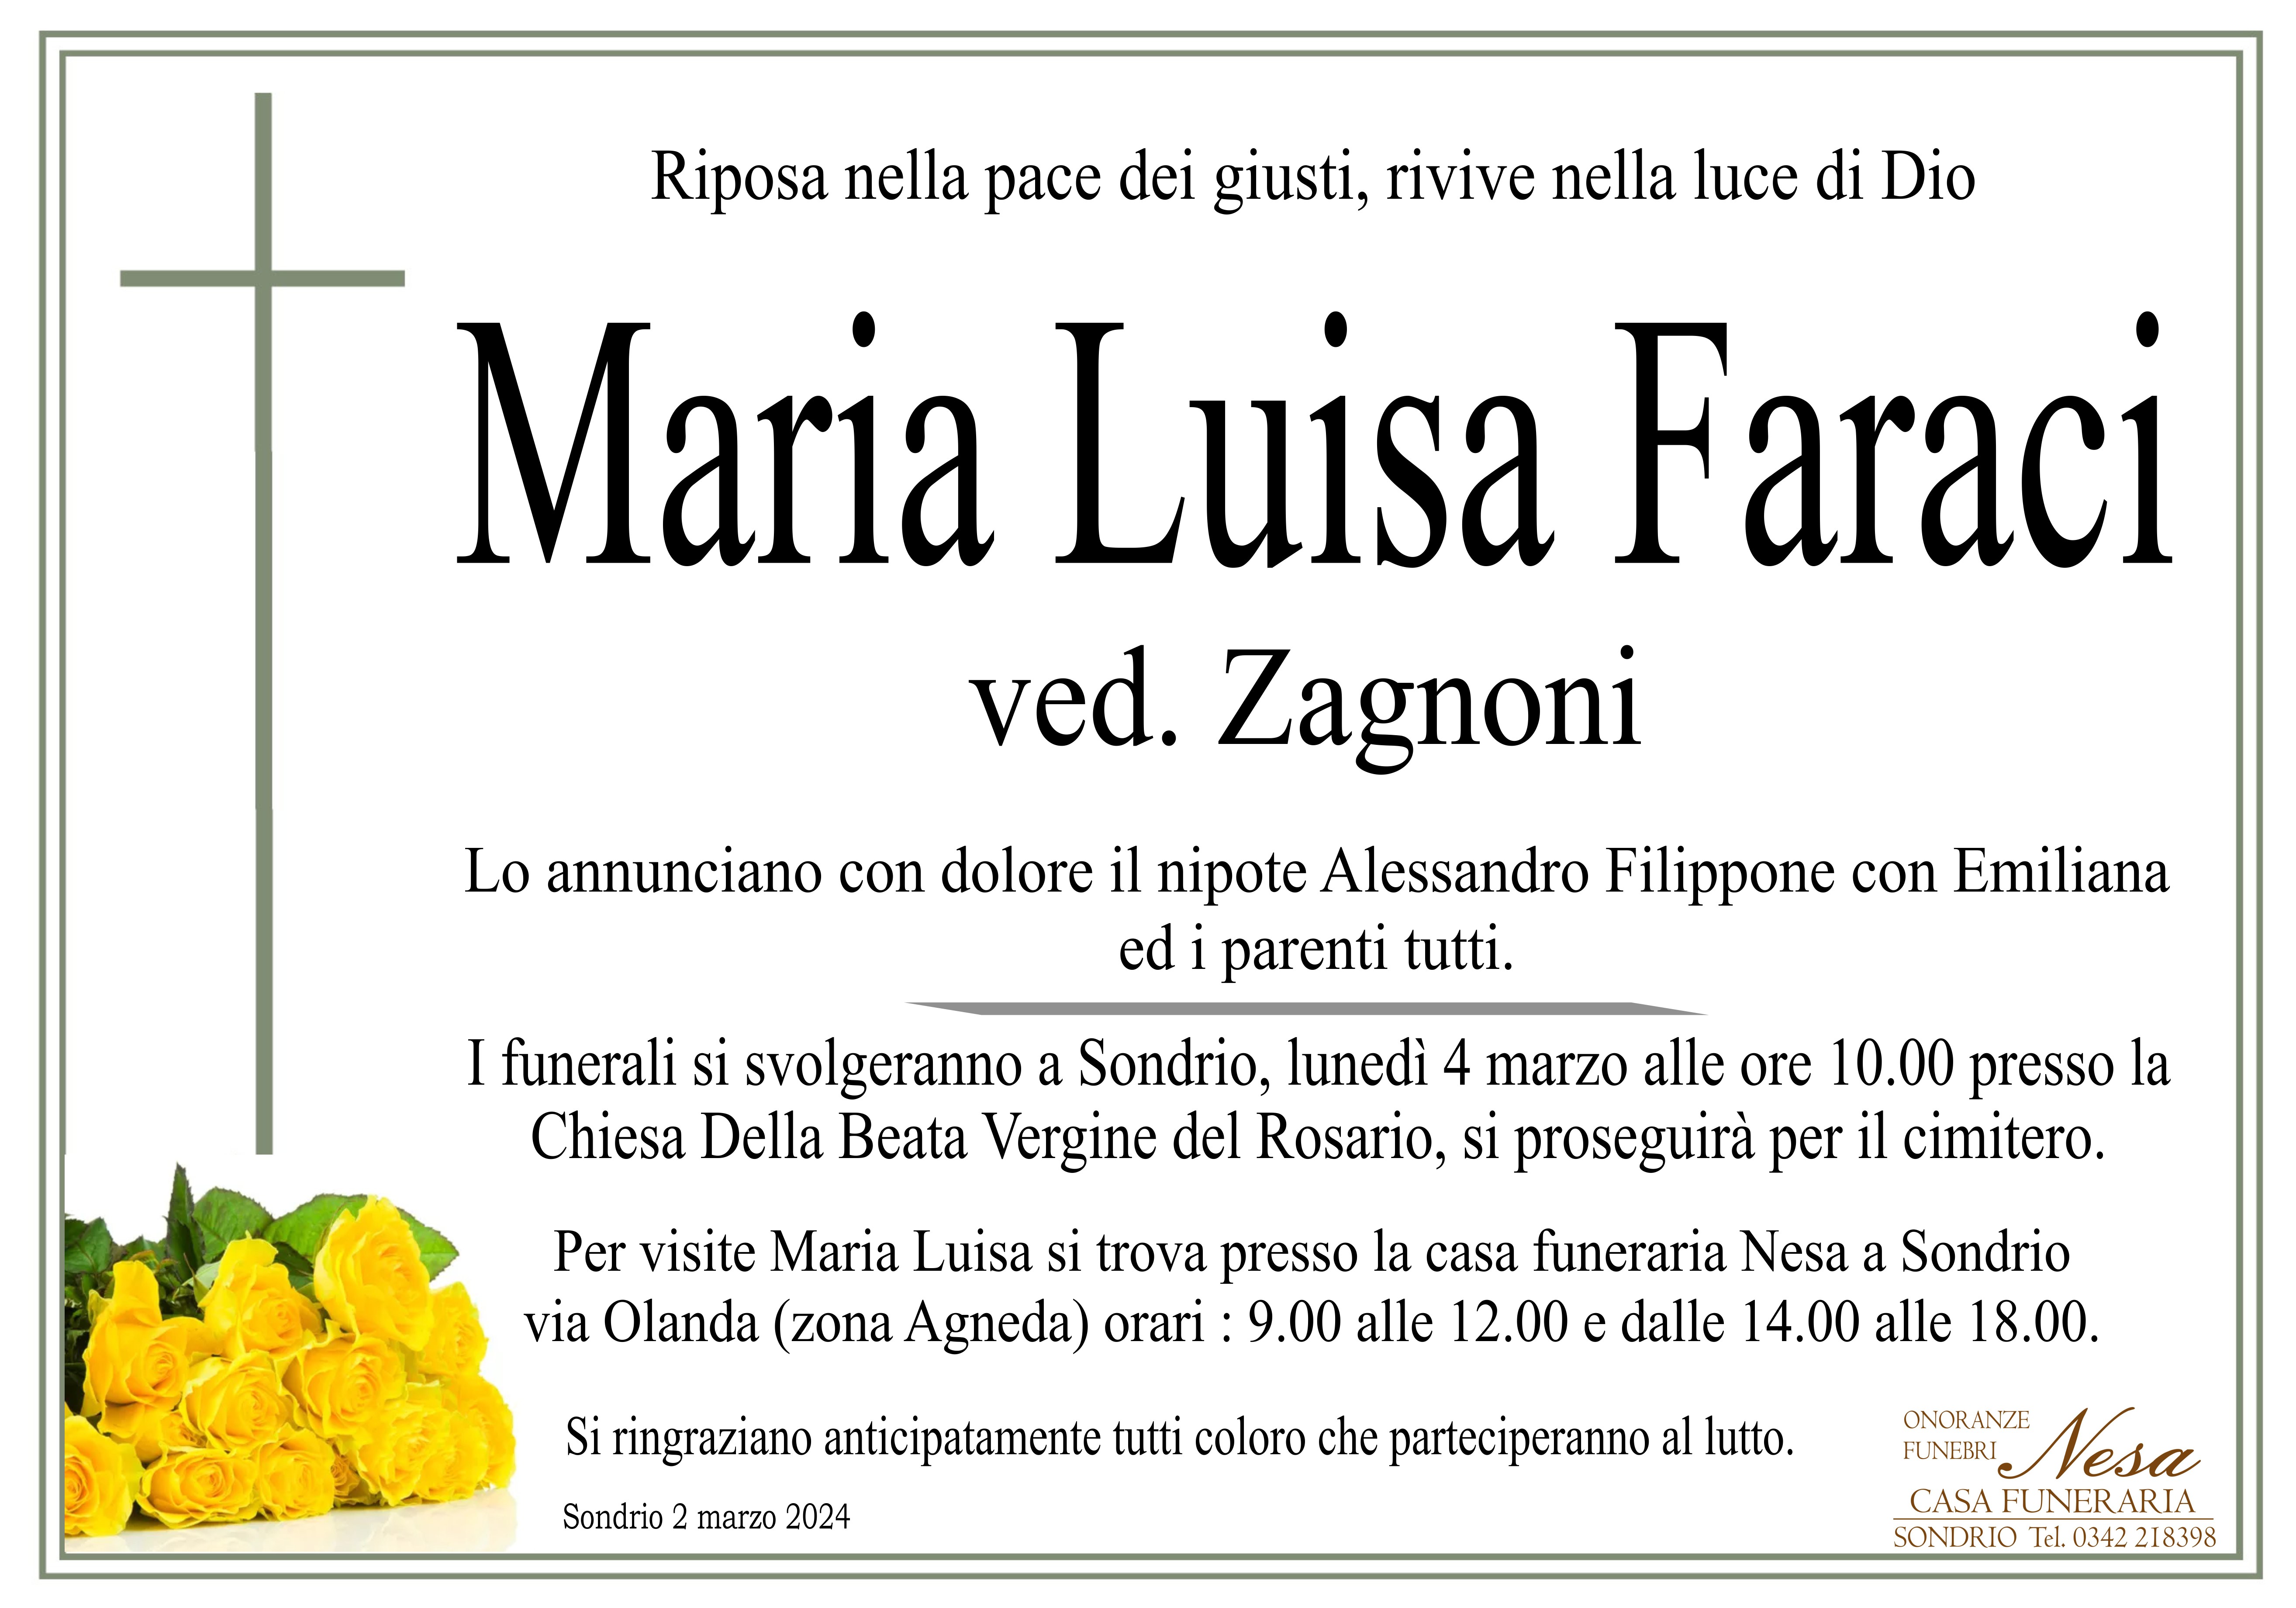 Necrologio Maria Luisa Faraci ved. Zagnoni